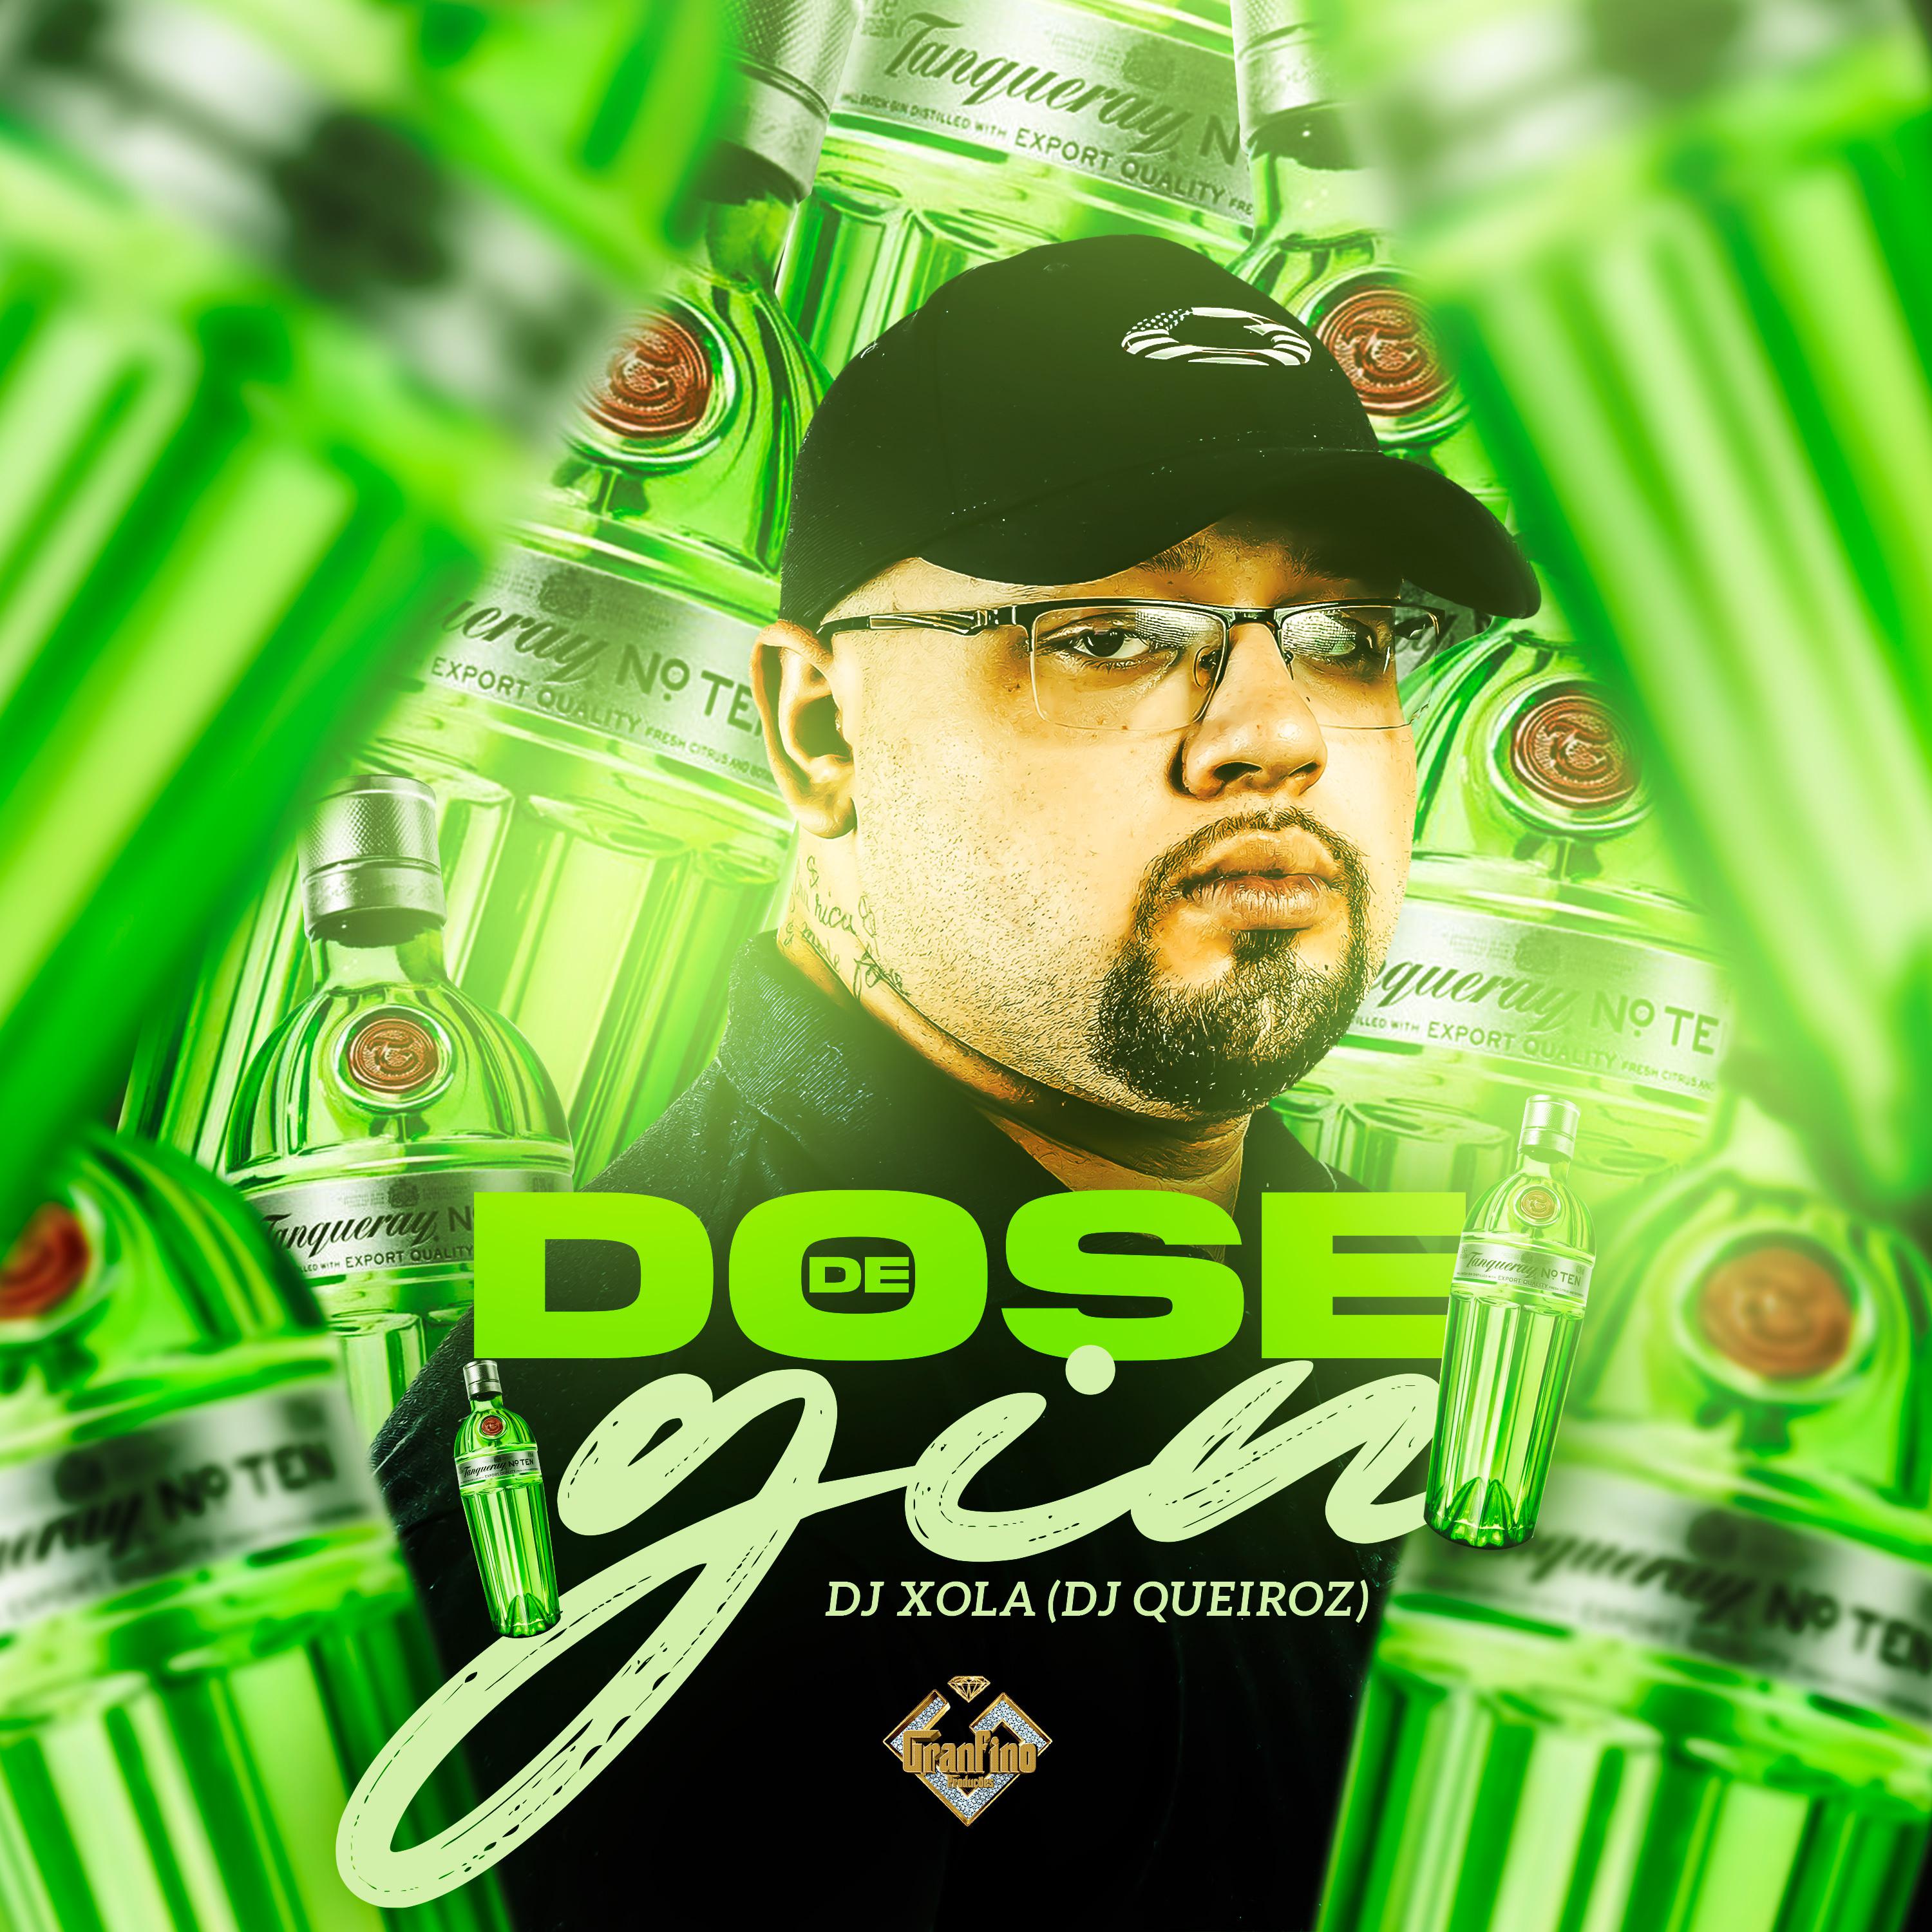 Постер альбома Dose de Gin